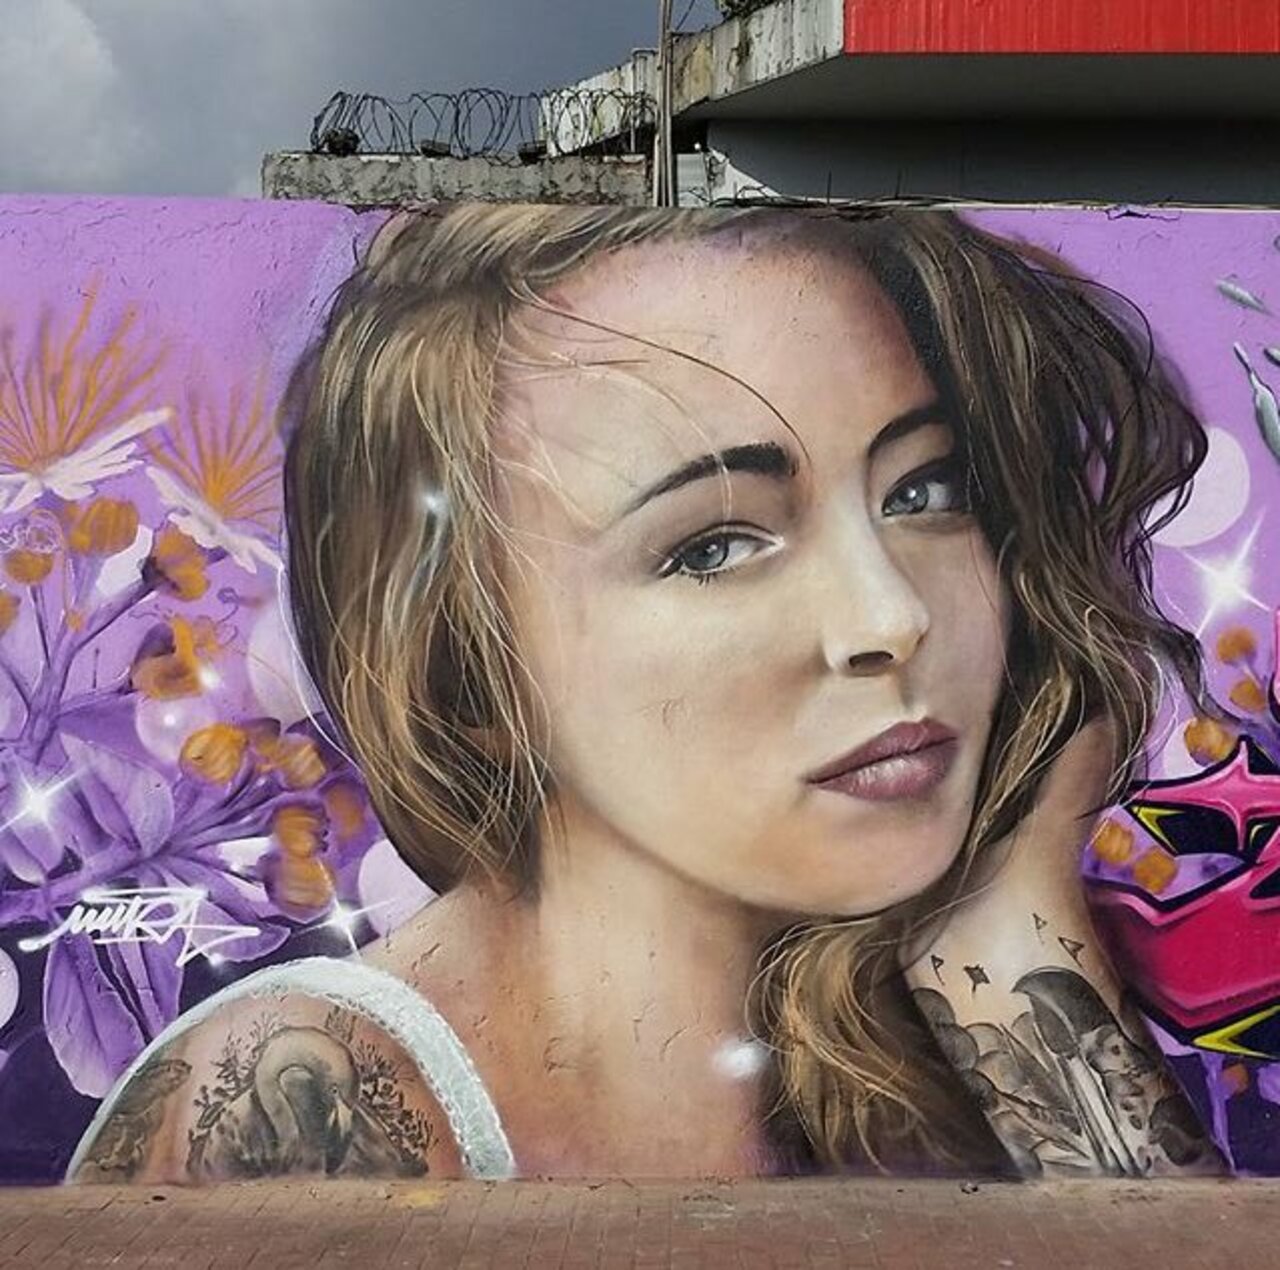 New Street Art by Mantarea 

#art #graffiti #mural #streetart https://t.co/AS5JHcCEwm